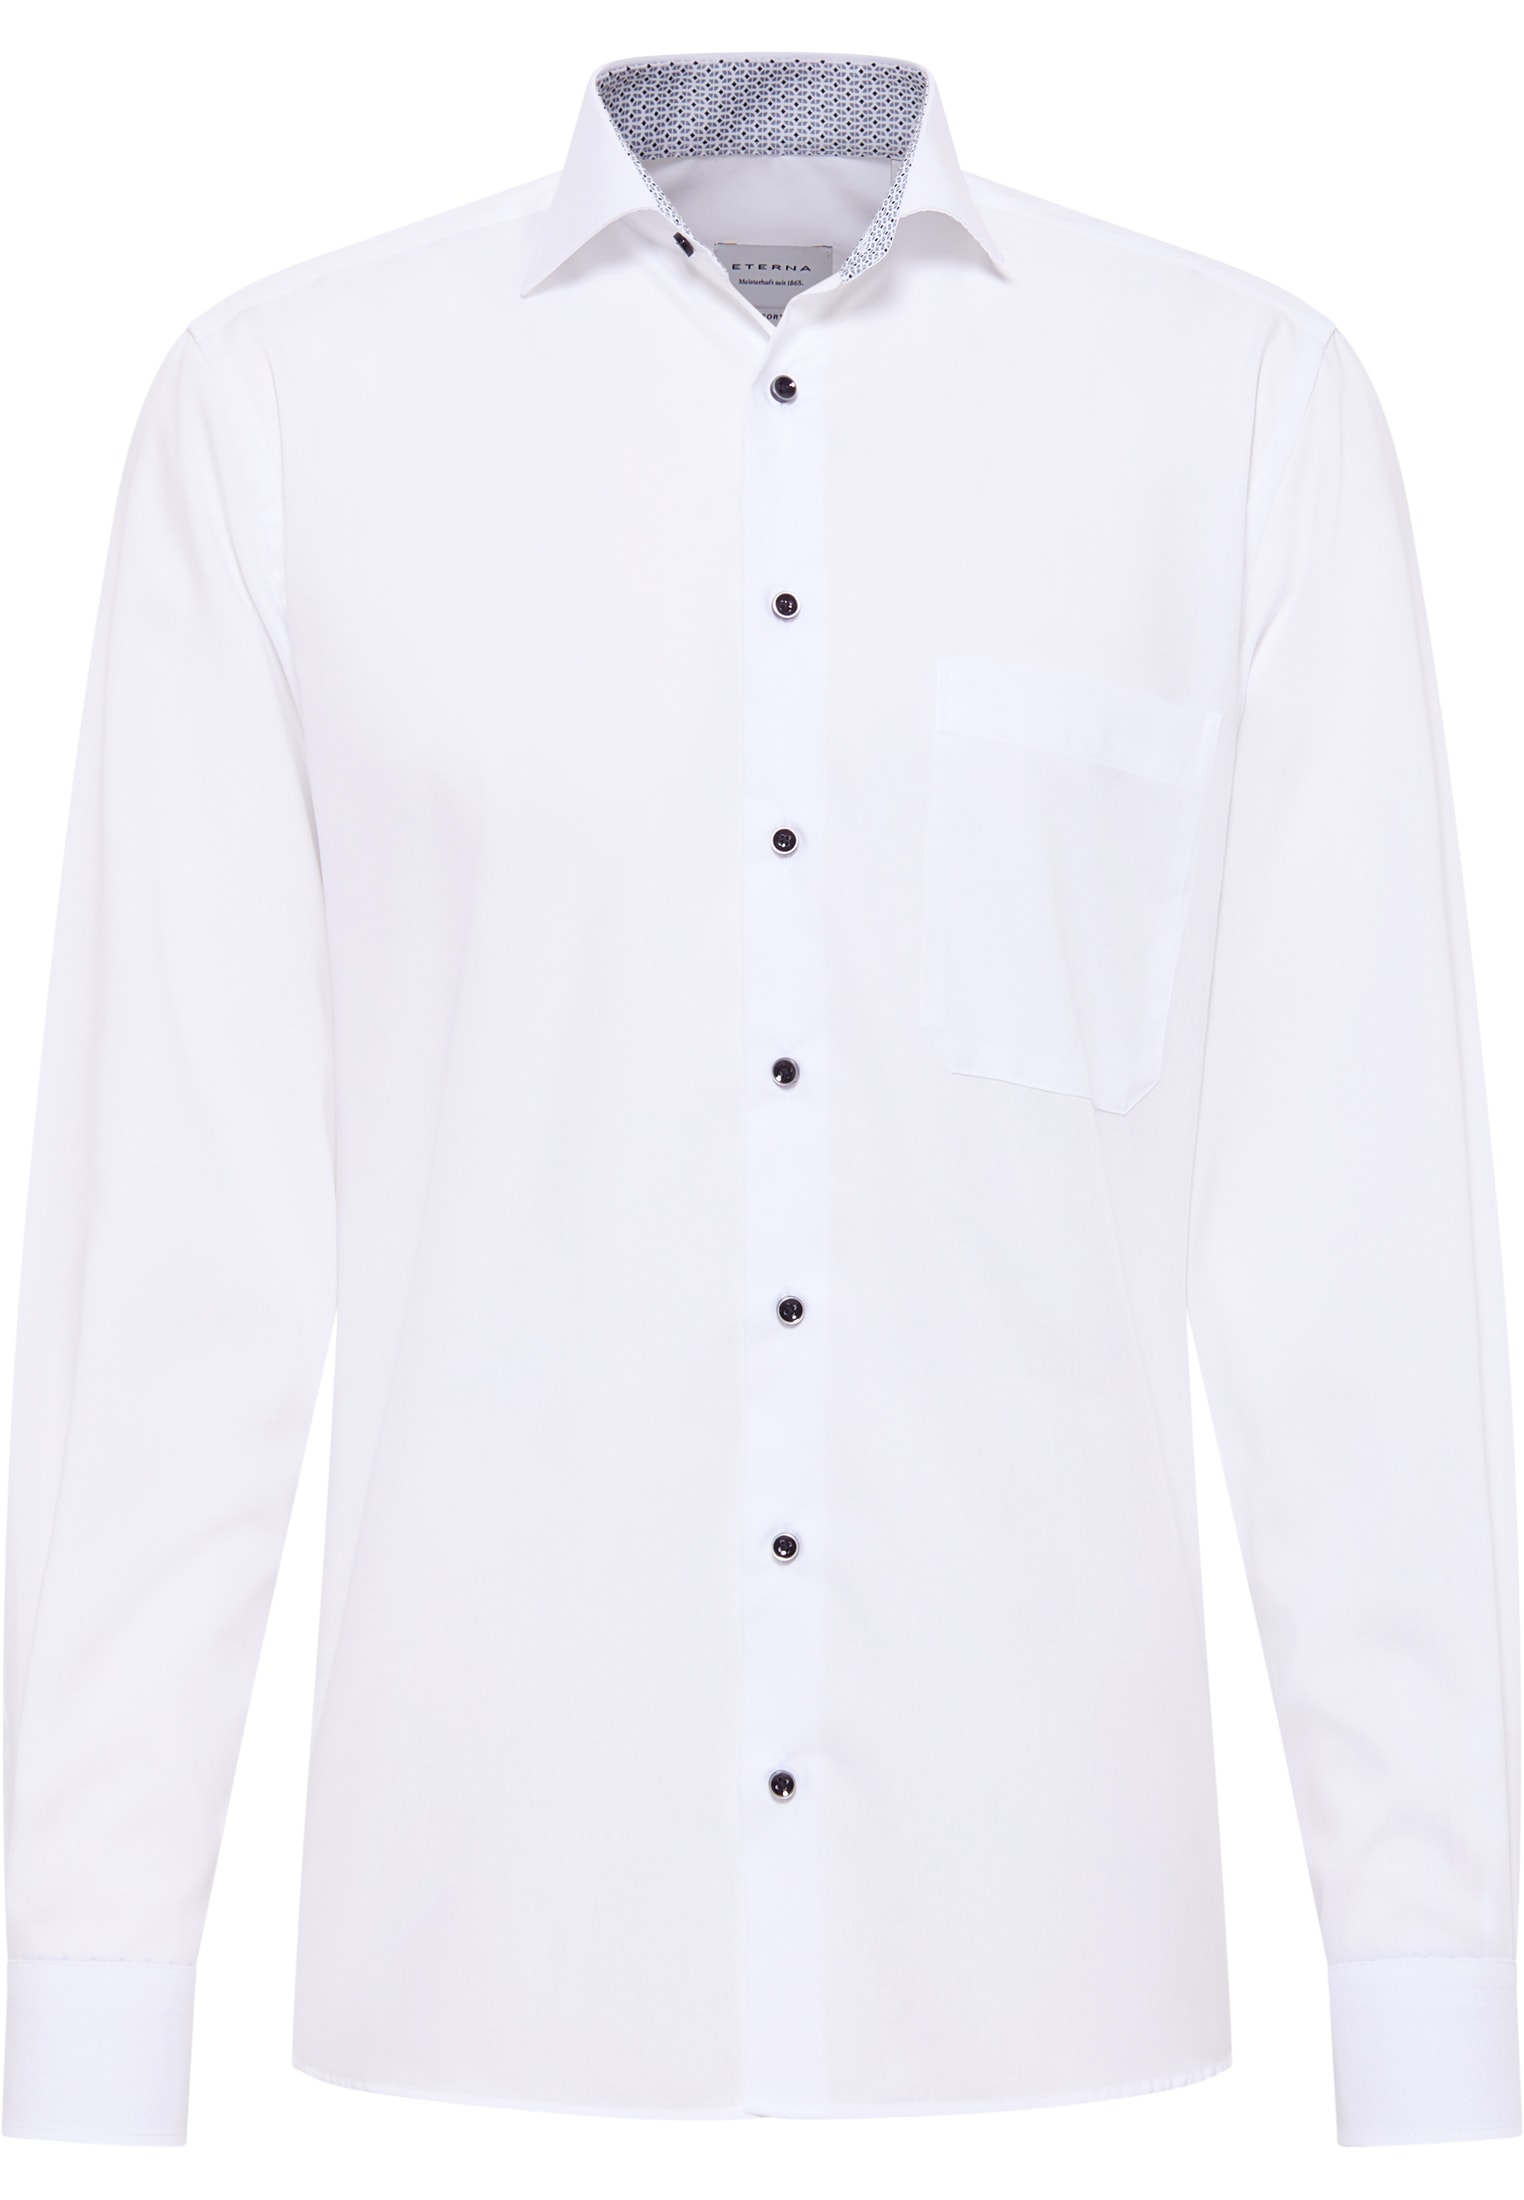 COMFORT FIT Original Shirt in weiß unifarben | weiß | 44 | verkürzter Arm  (59 cm) | 1SH12862-00-01-44-59